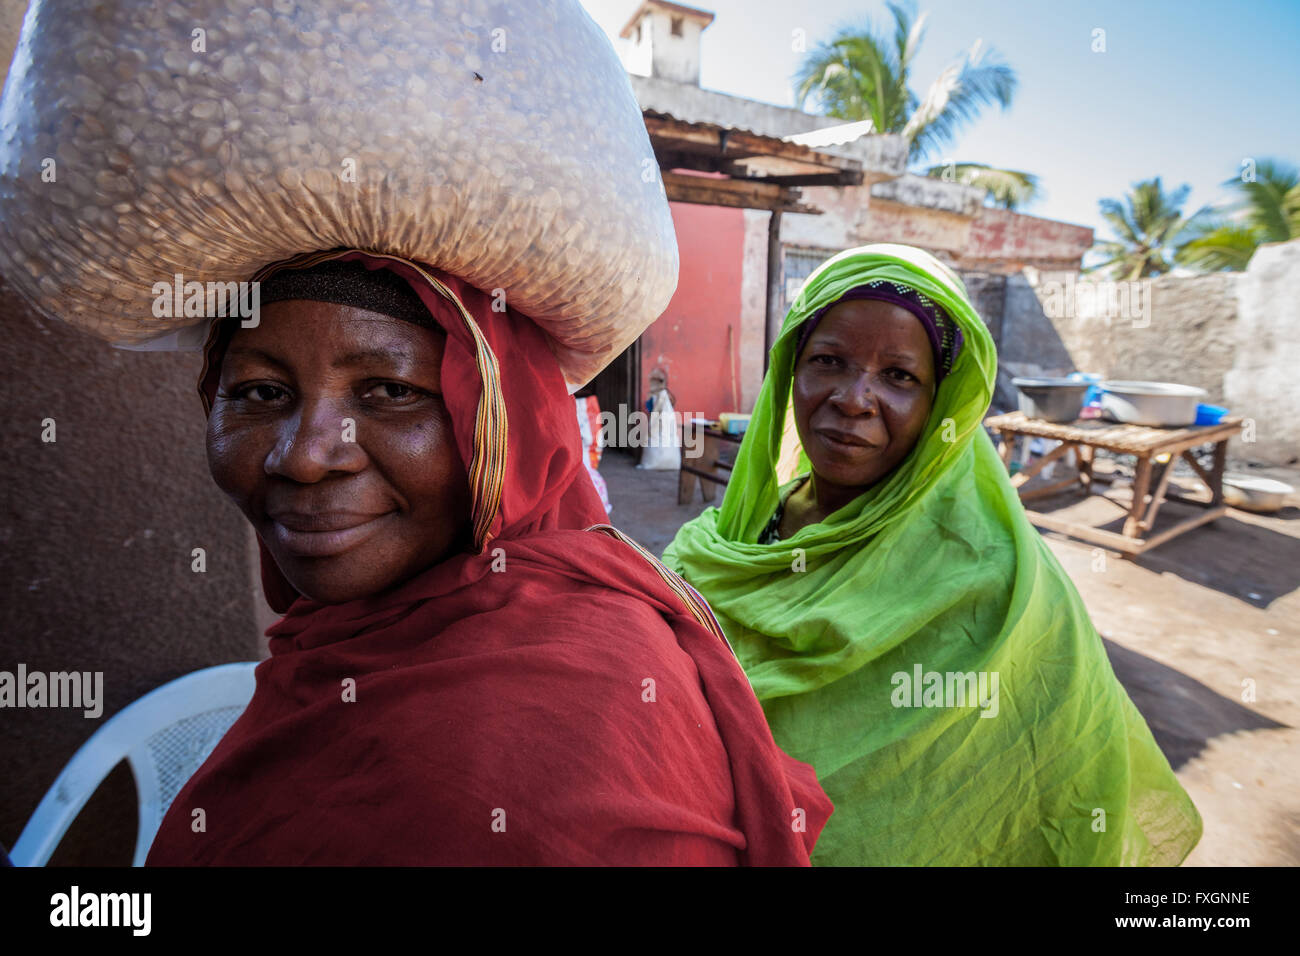 Mozambico,le donne a piedi in strada in abiti colorati e velo, con carrello sulla testa. Foto Stock